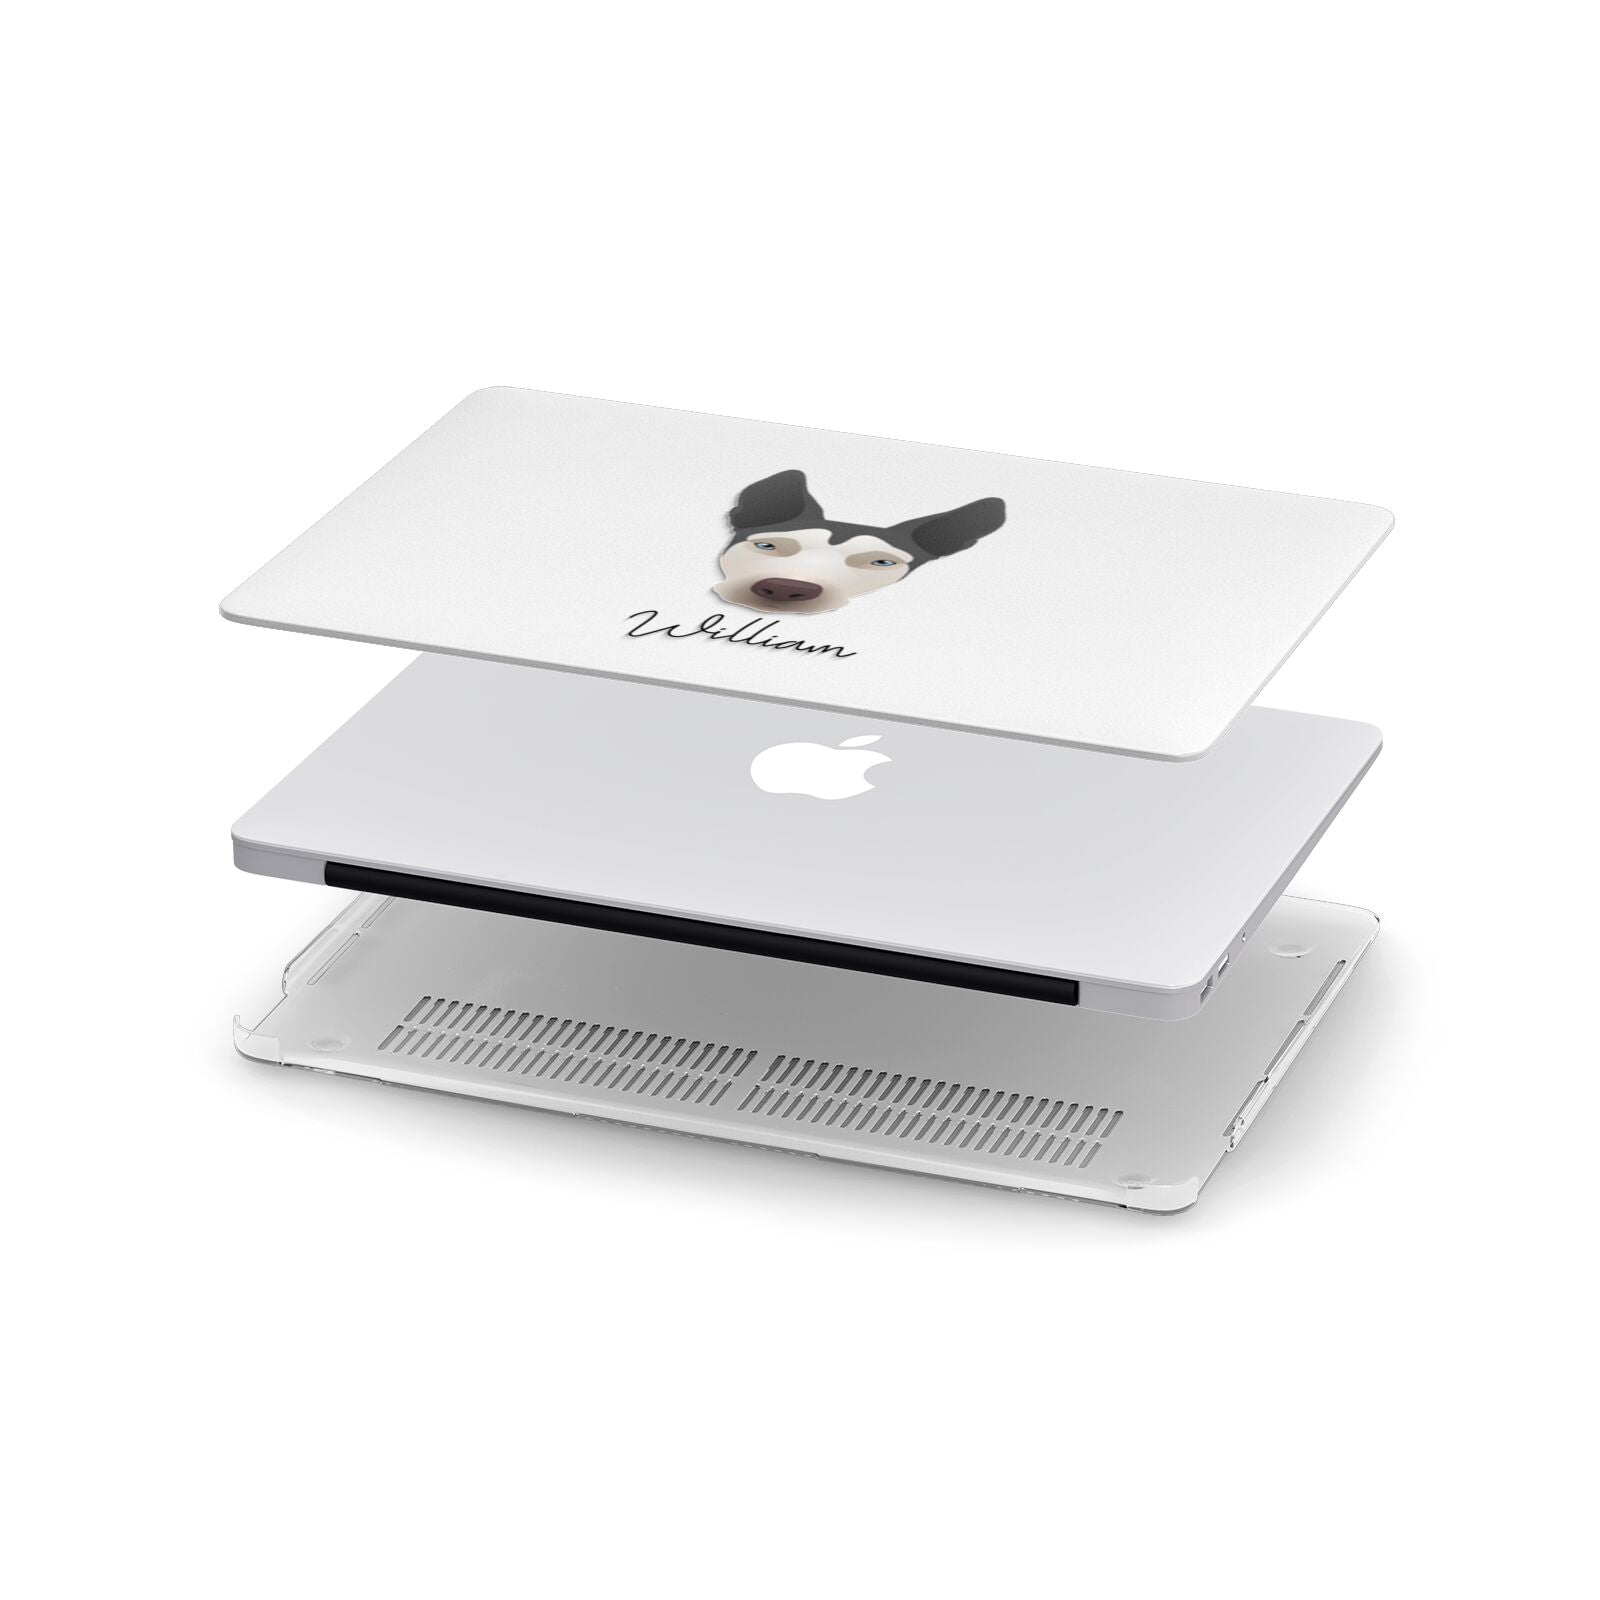 Pitsky Personalised Apple MacBook Case in Detail